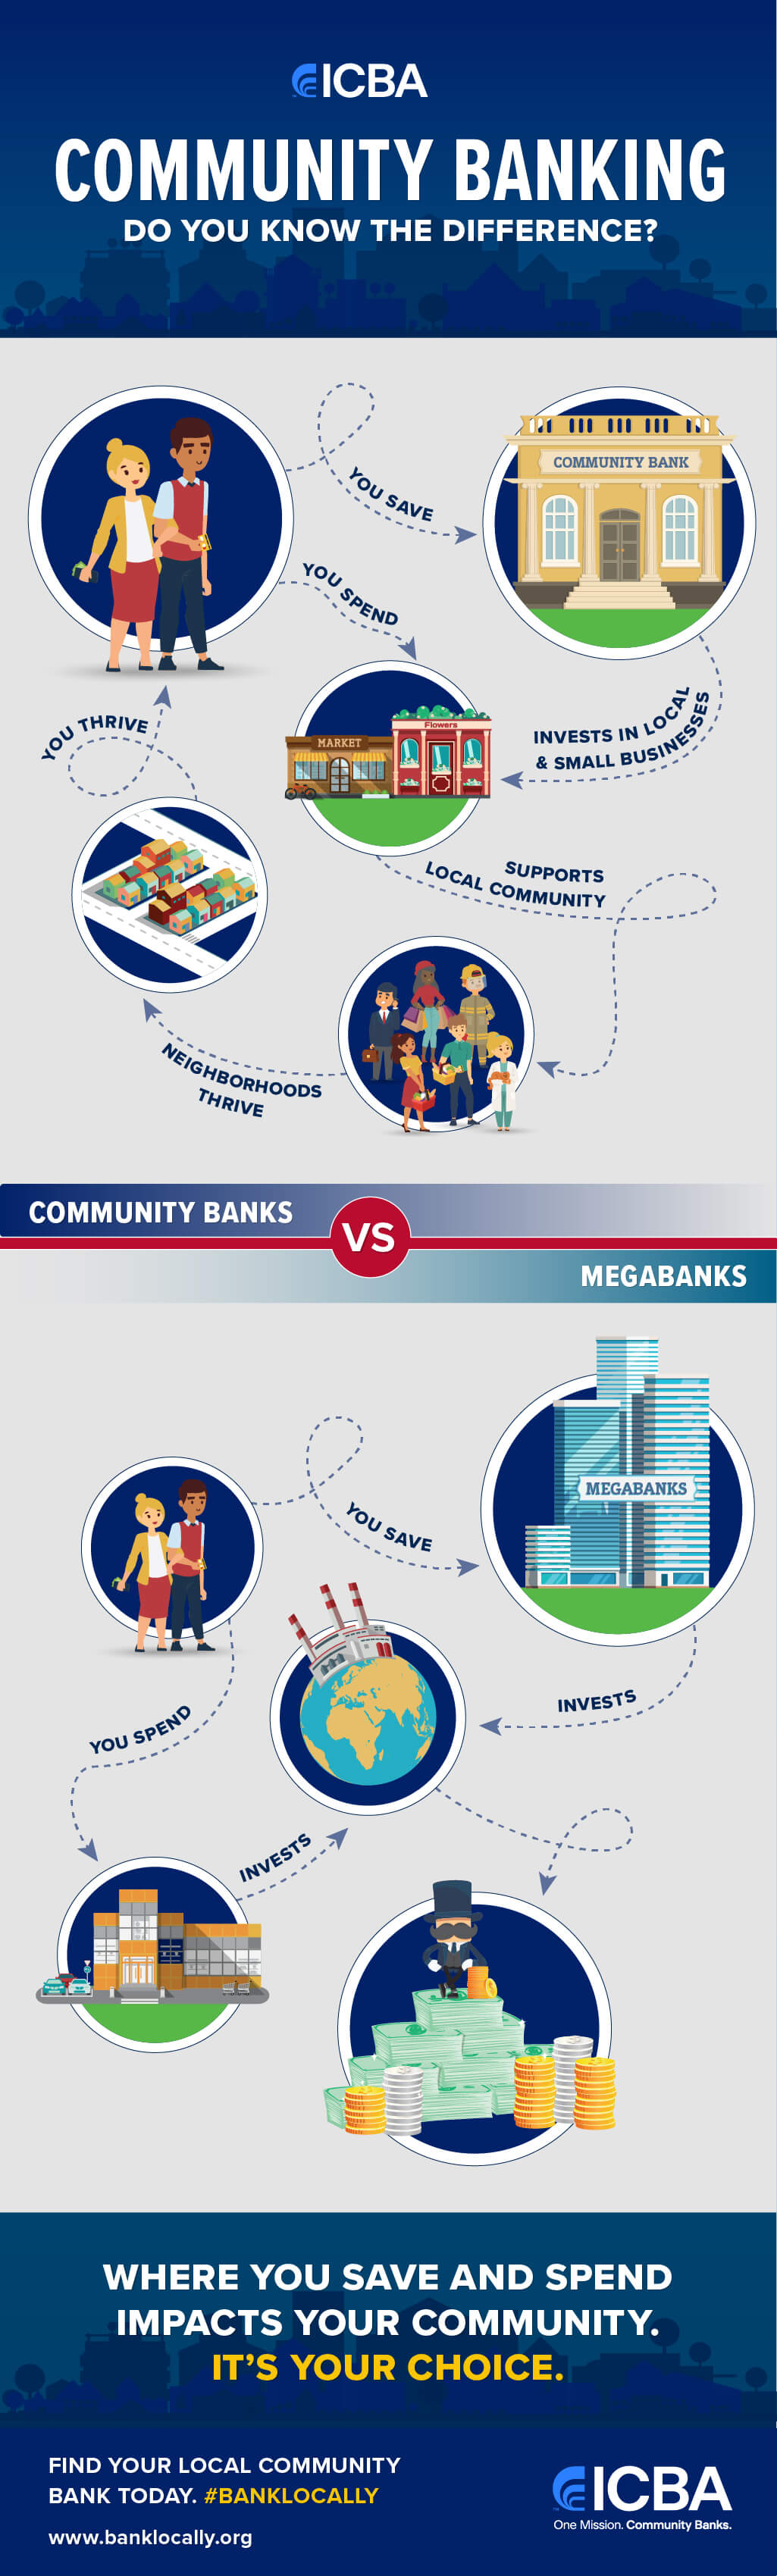 Community banks vs megabanks